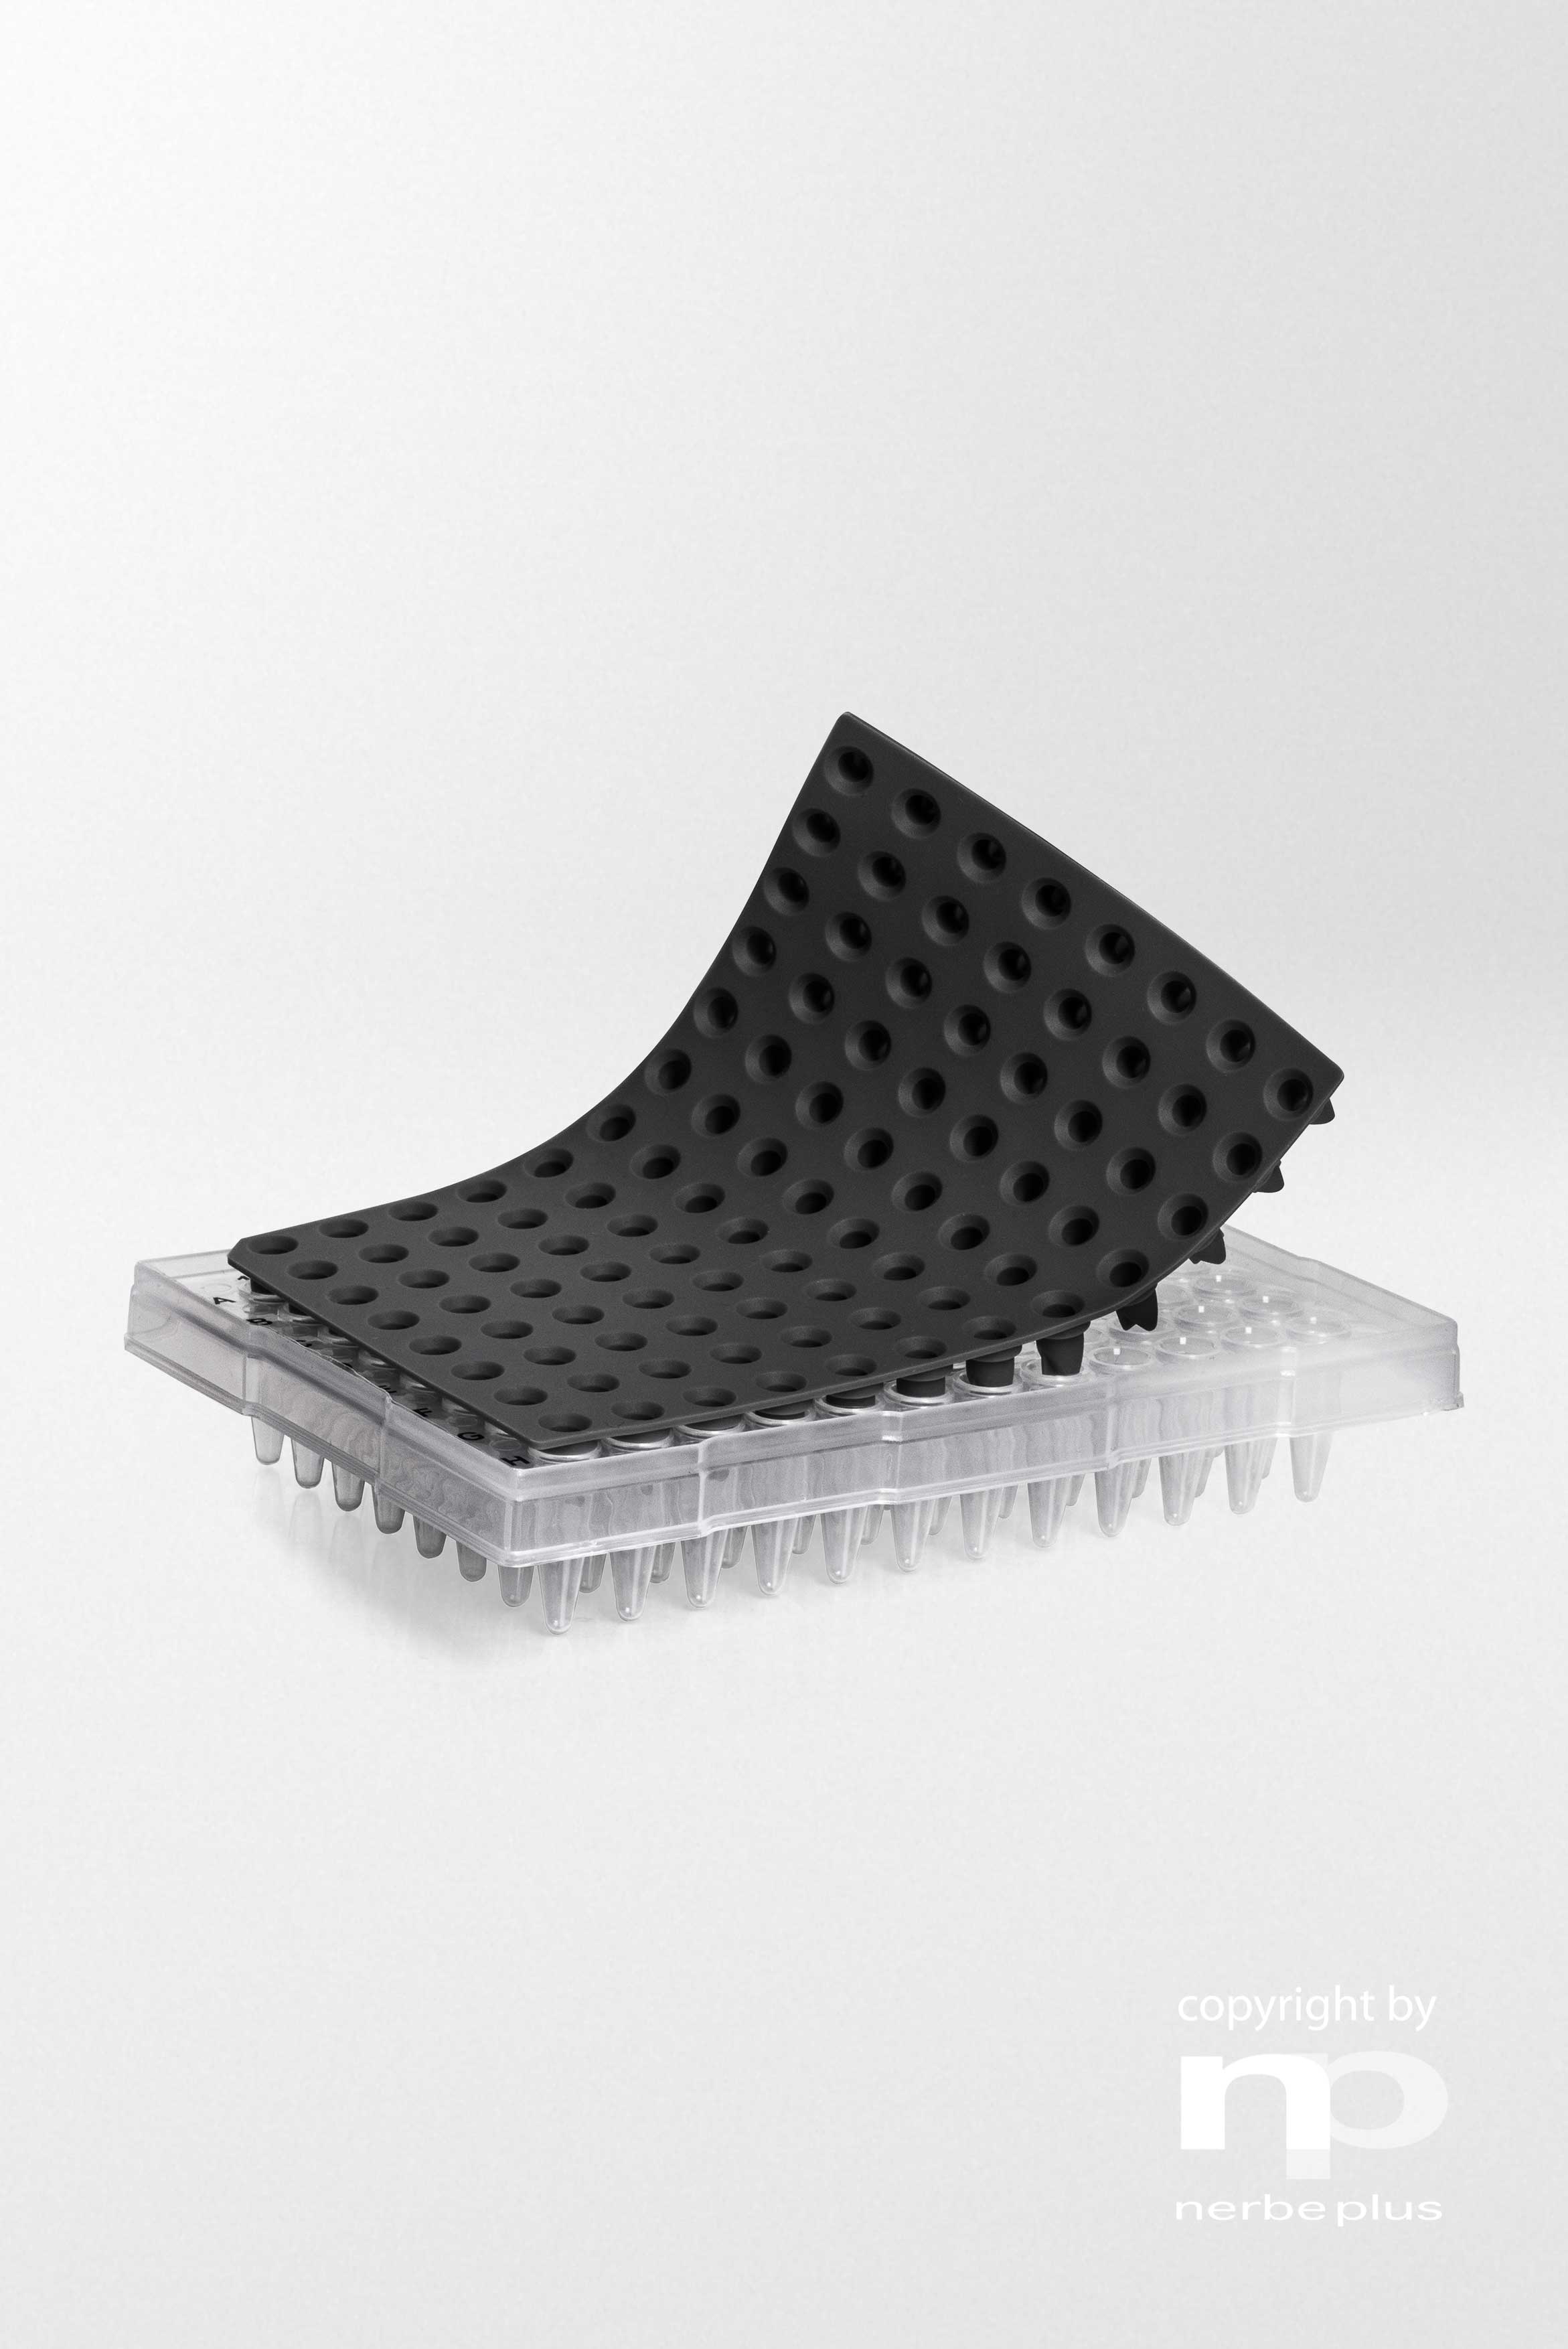 Alfombrillas selladoras de silicona. NERBE-PLUS. Placa: PCR de 96 pocillos. Tipo pocillo: Redondo. Color: Negro. Esterilidad: PCR Ready